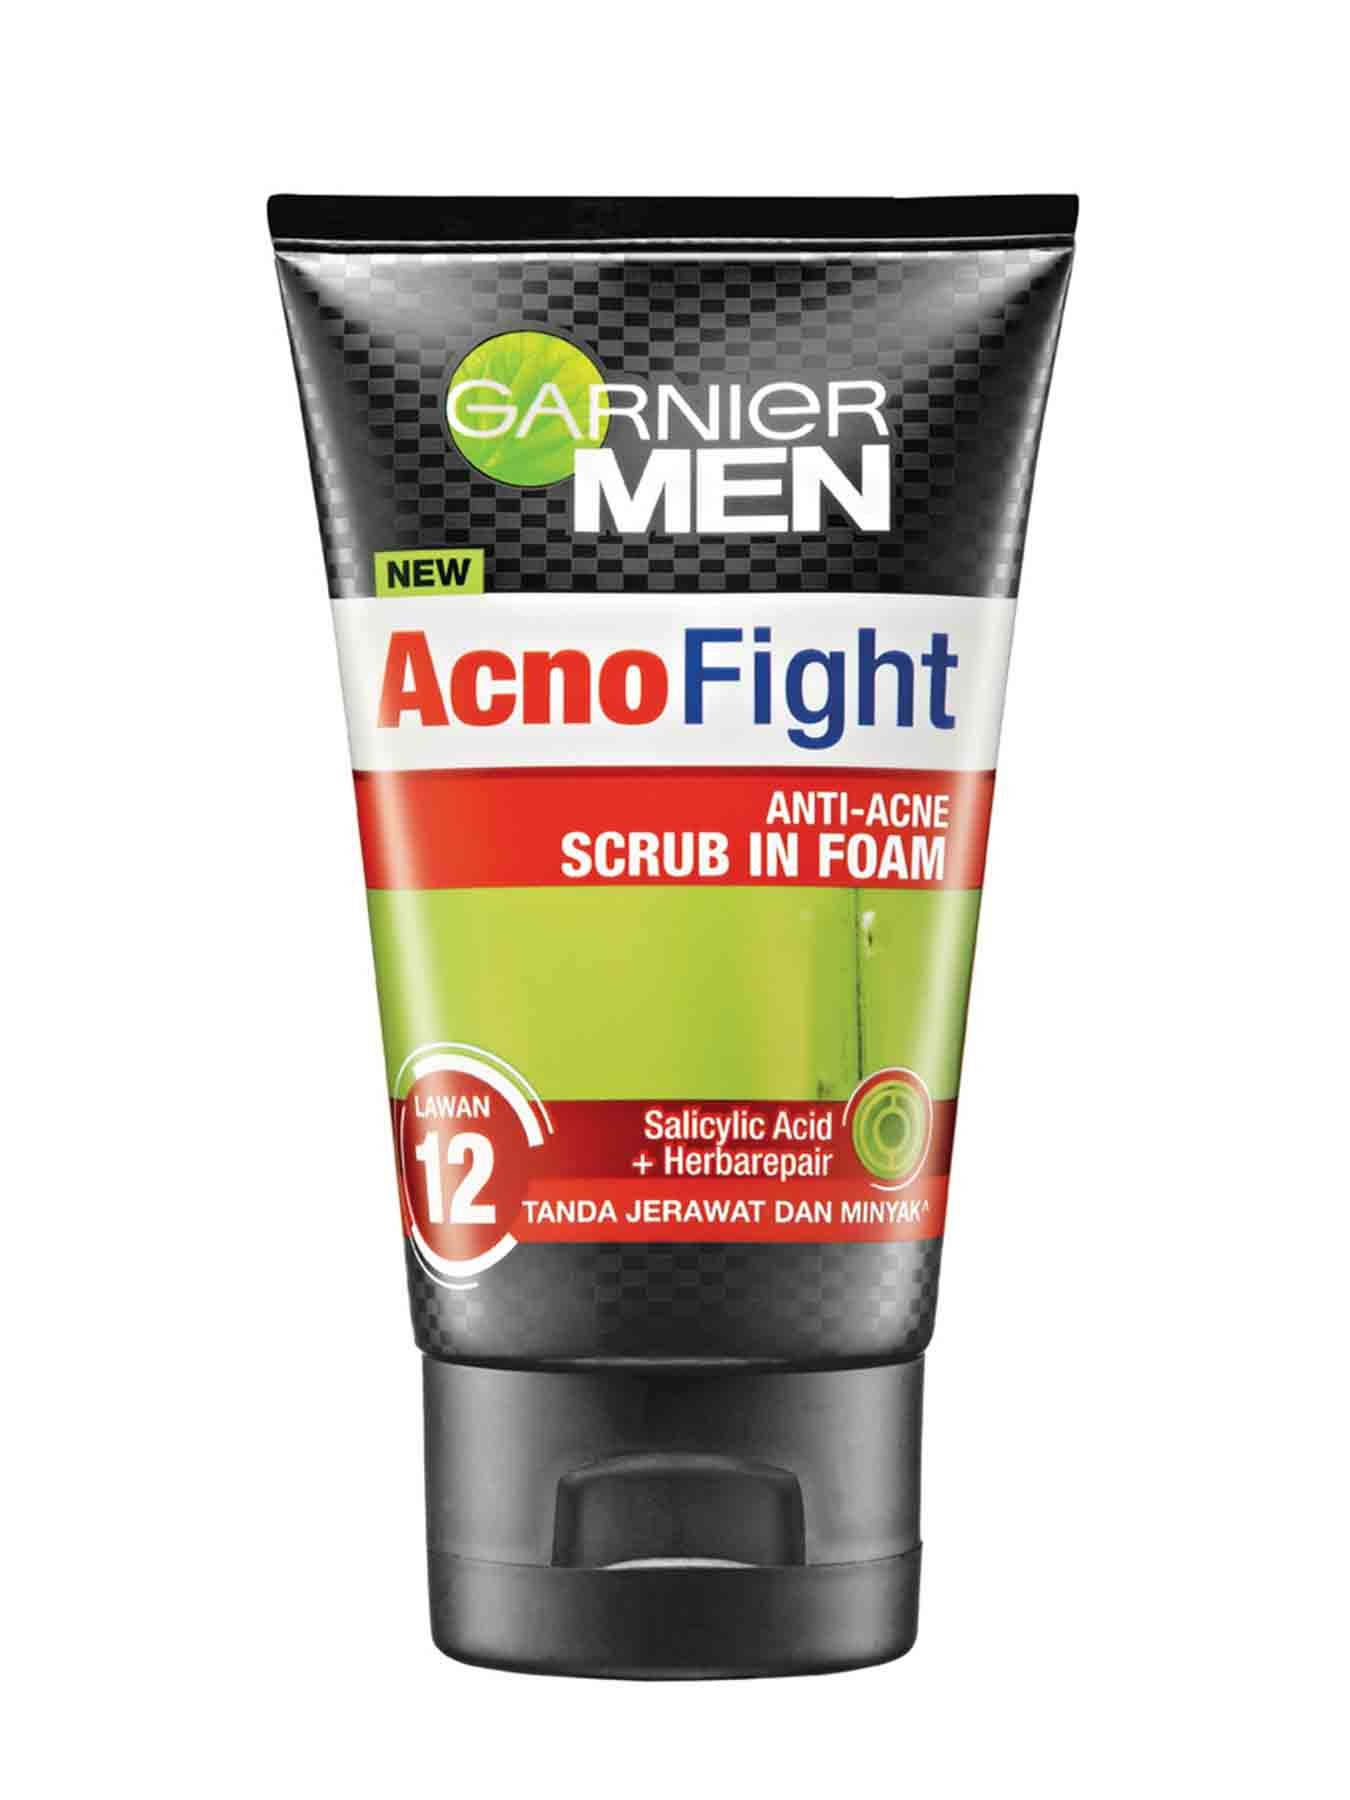 garnier men acno fight 12 in 1 anti acne scrub in foam